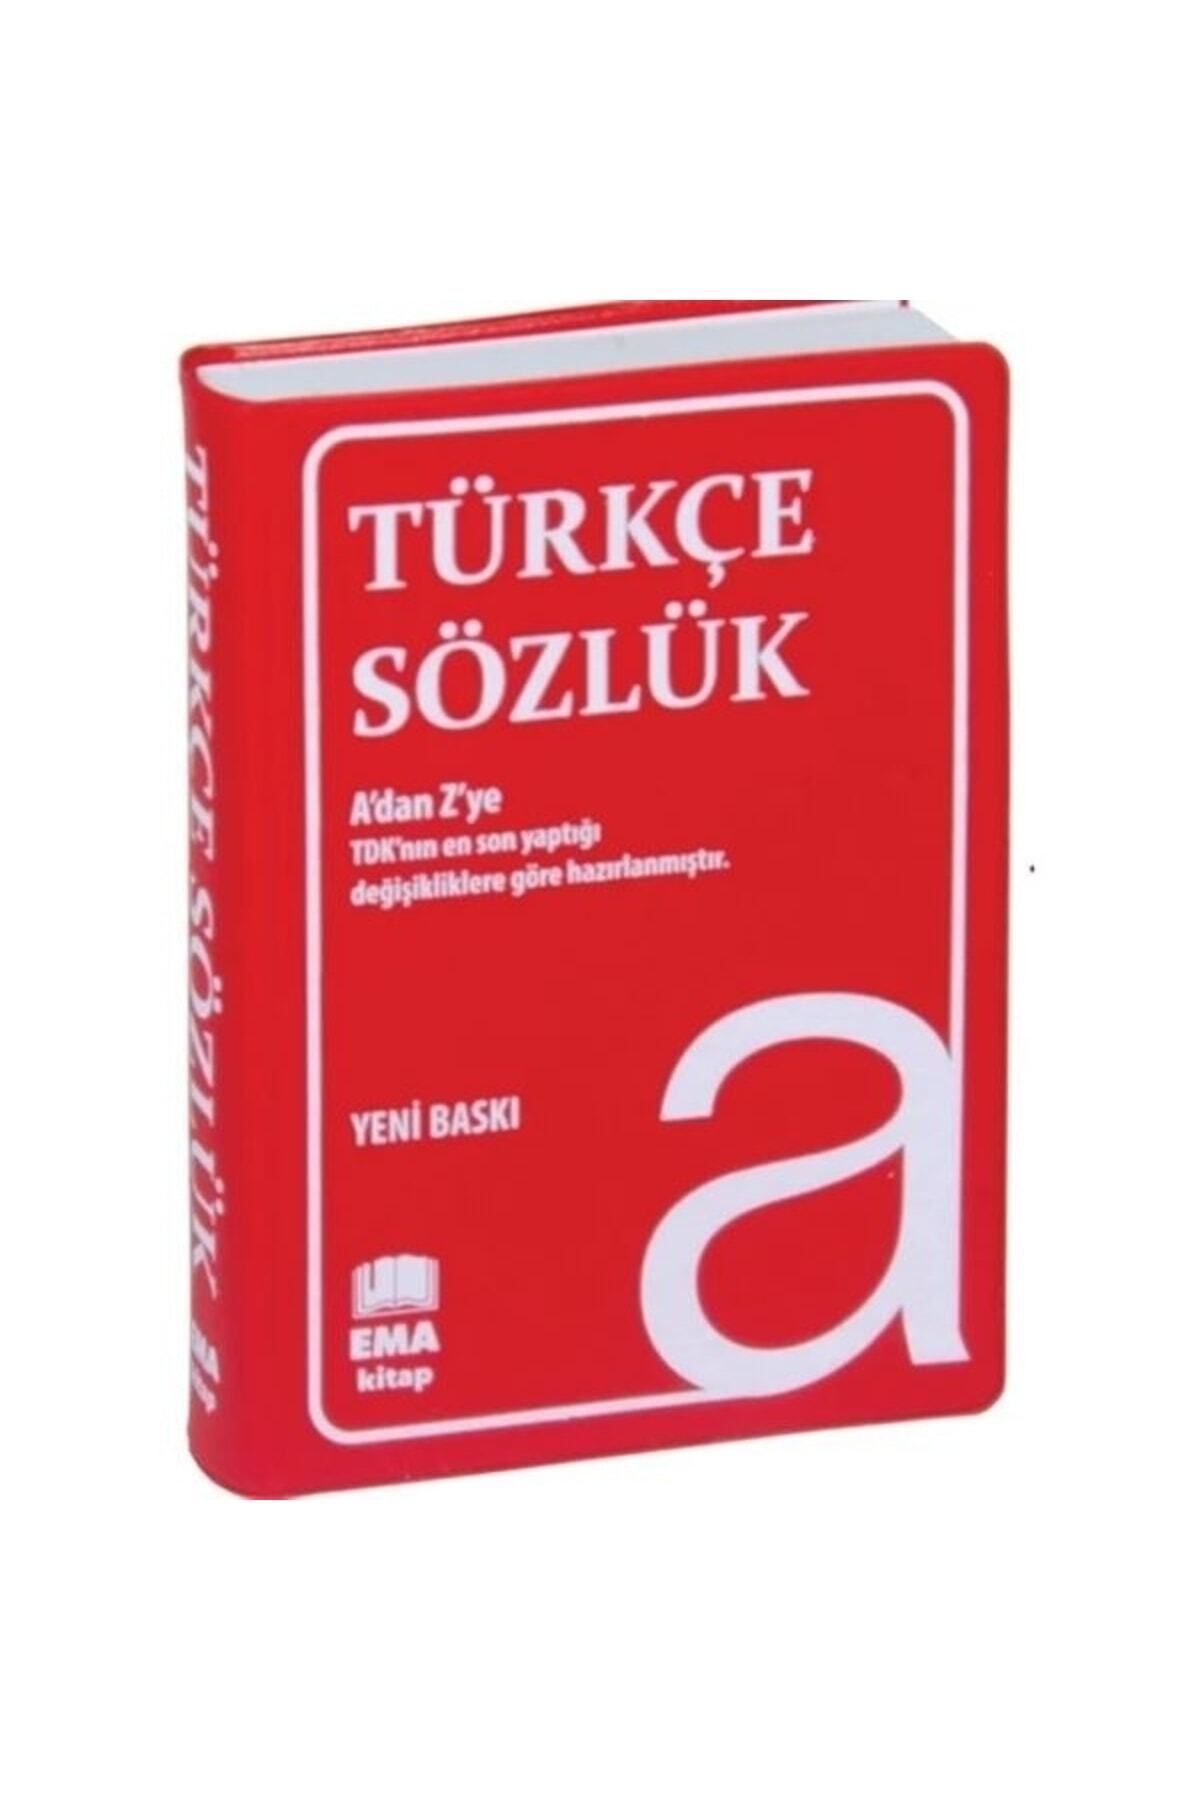 Ema Kitap Türkçe Sözlük A Dan Z Ye Tdk Uyumlu (PLASTİK KAPAK)